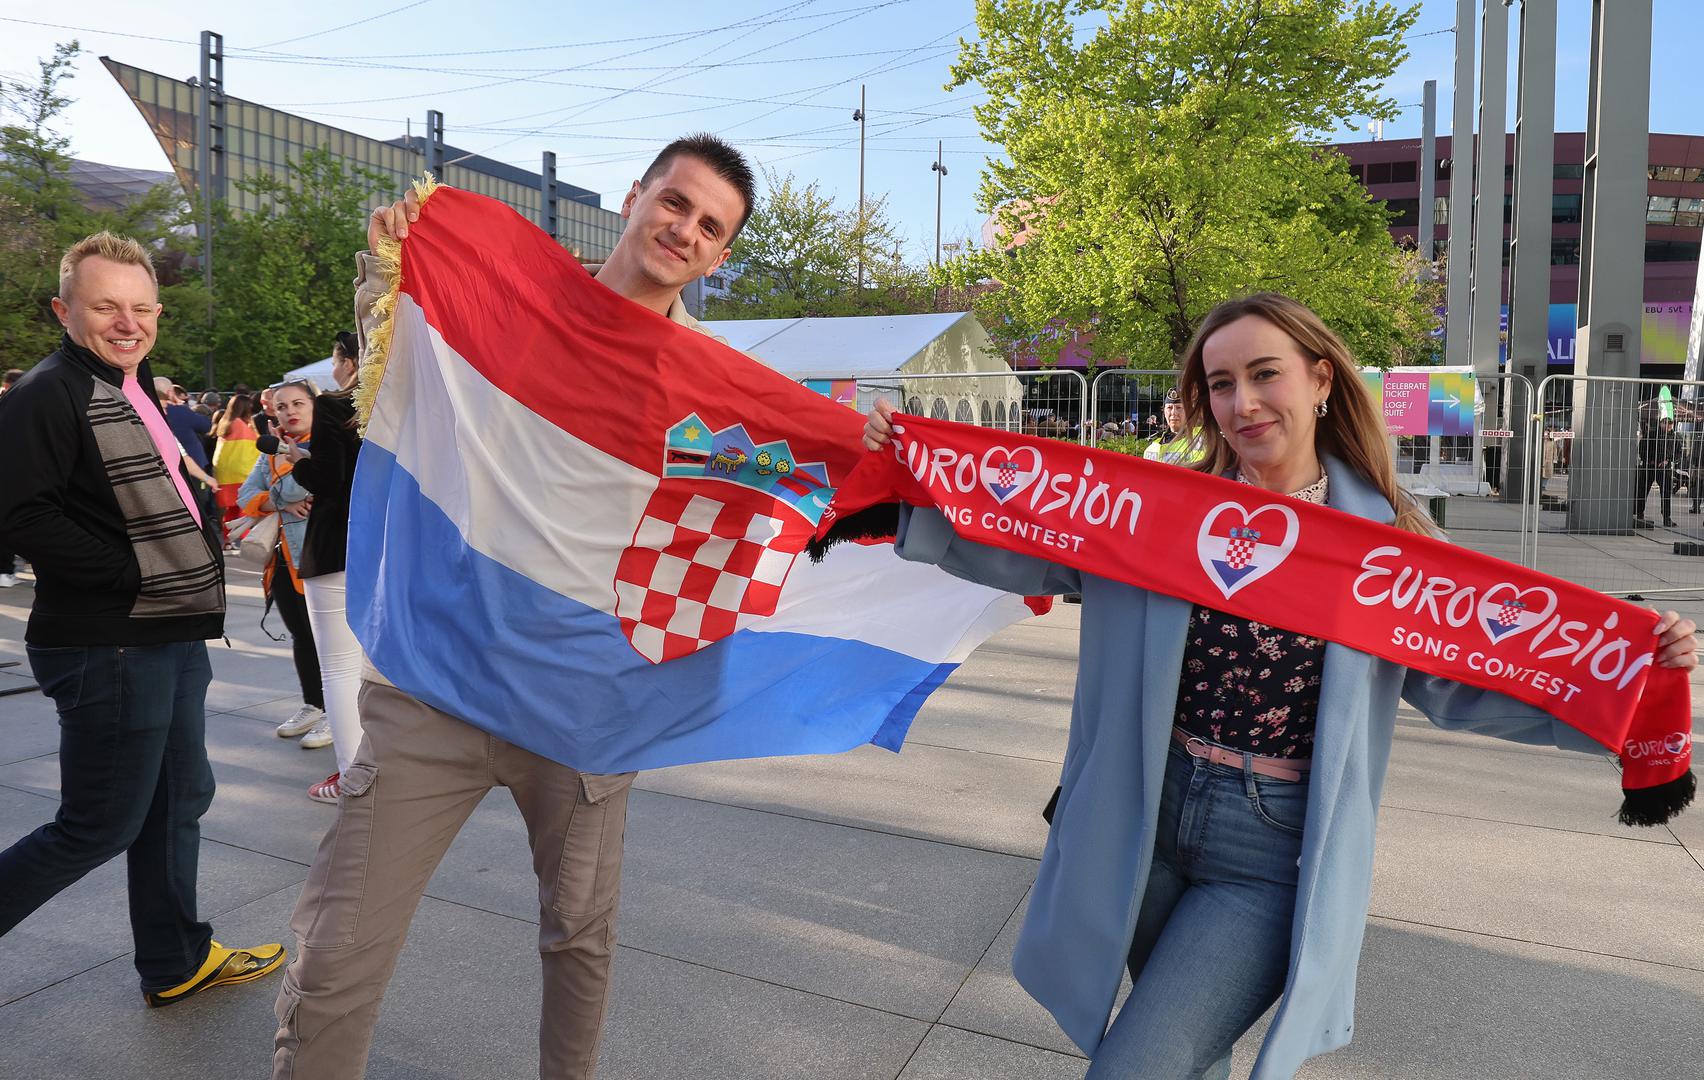  - Neka nam Baby Lasagna donese prvo mjesto i Euroviziju u Hrvatsku - rekli su nam navijači koji su zbog Eurovizije stigli iz Imotskog.